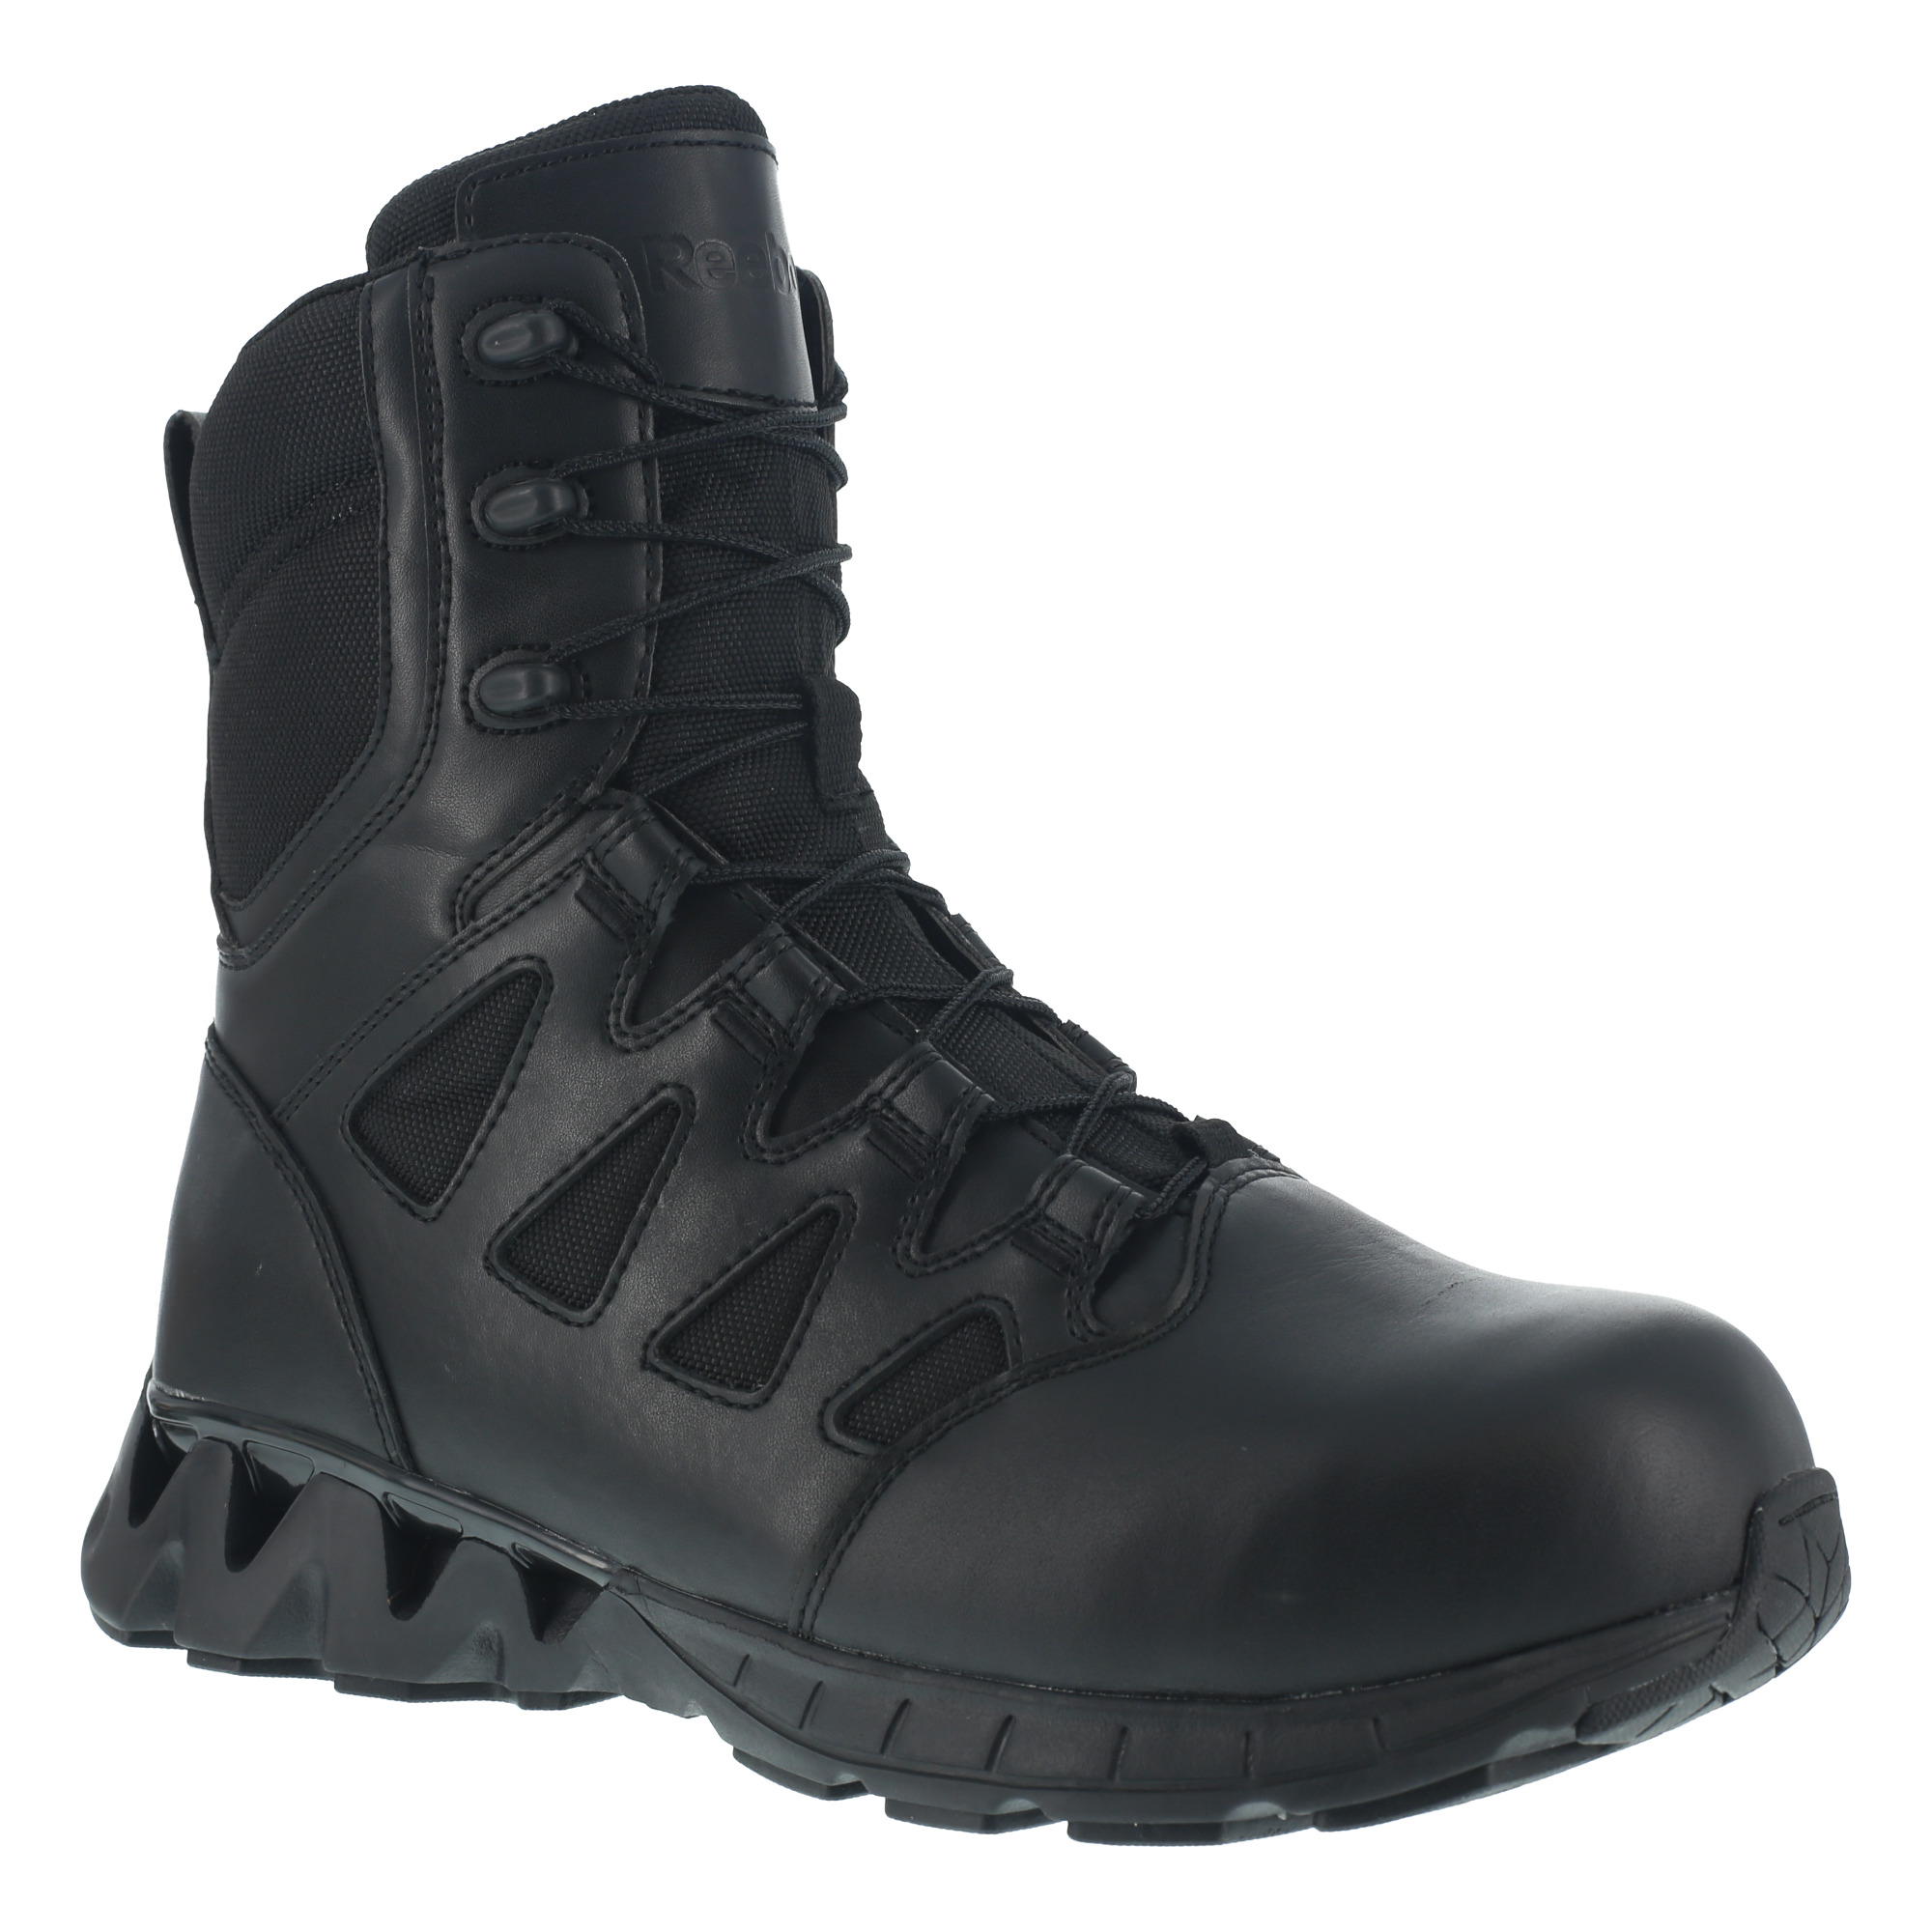 Reebok Work Women's RB846 ZigKick 8"Tactical Composite Toe Boot with Side Zipper - Black